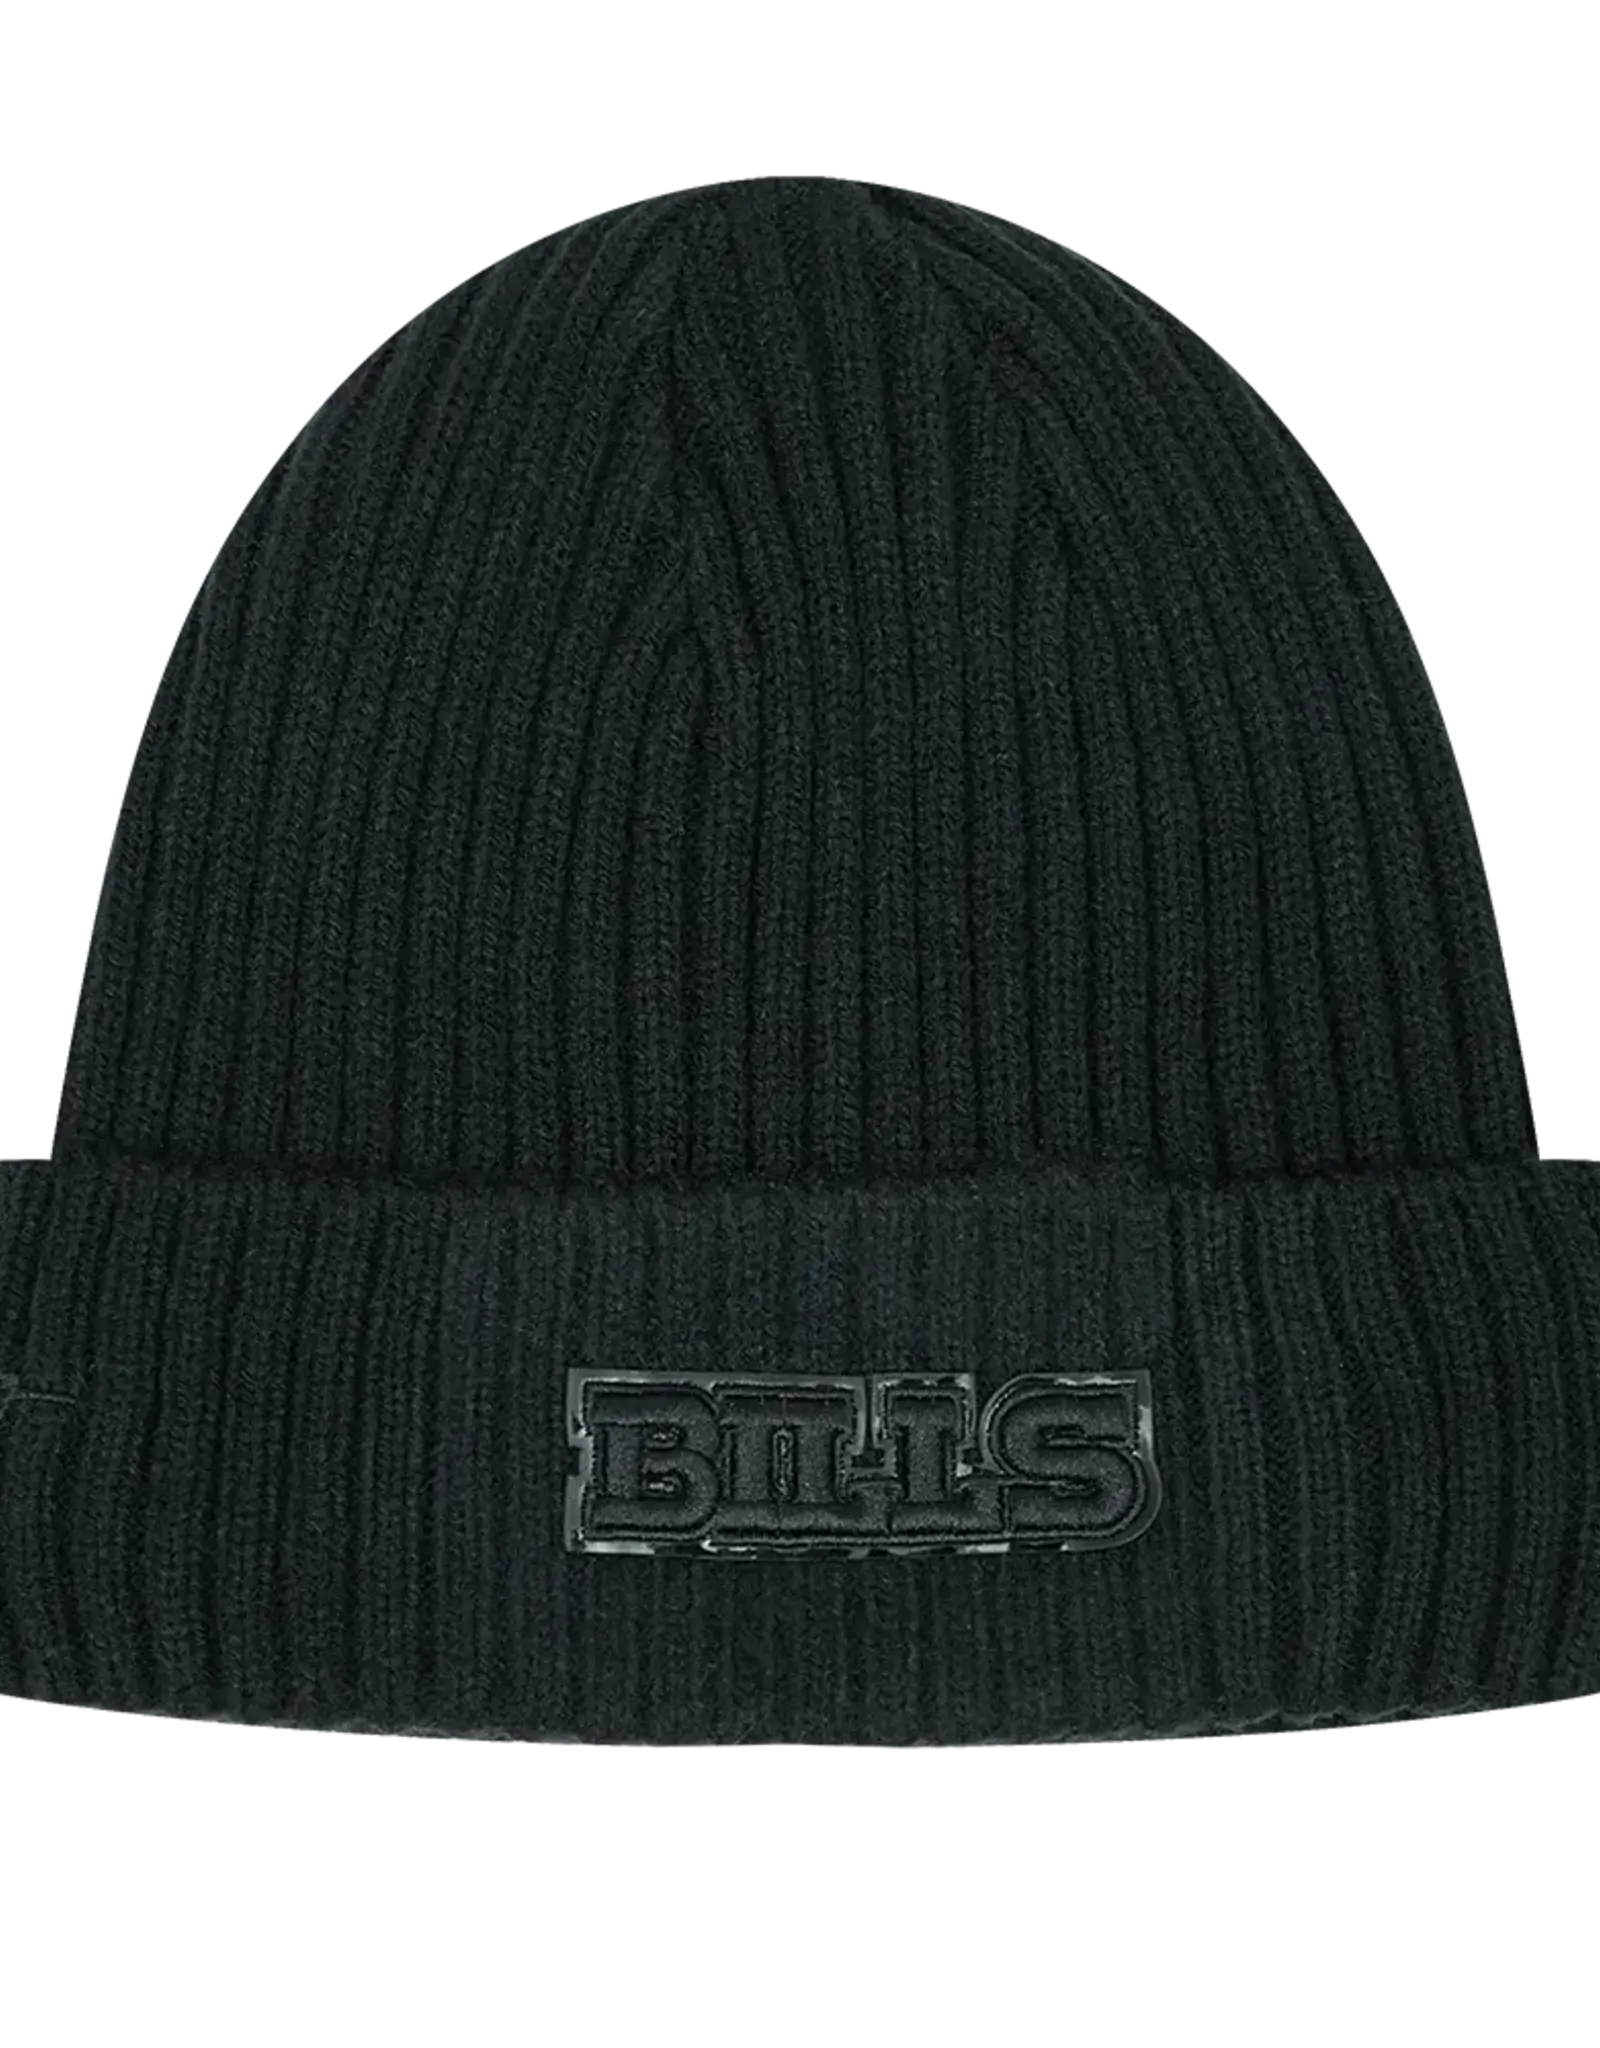 Pro Standard Buffalo Bills Triple Black Knit Hat